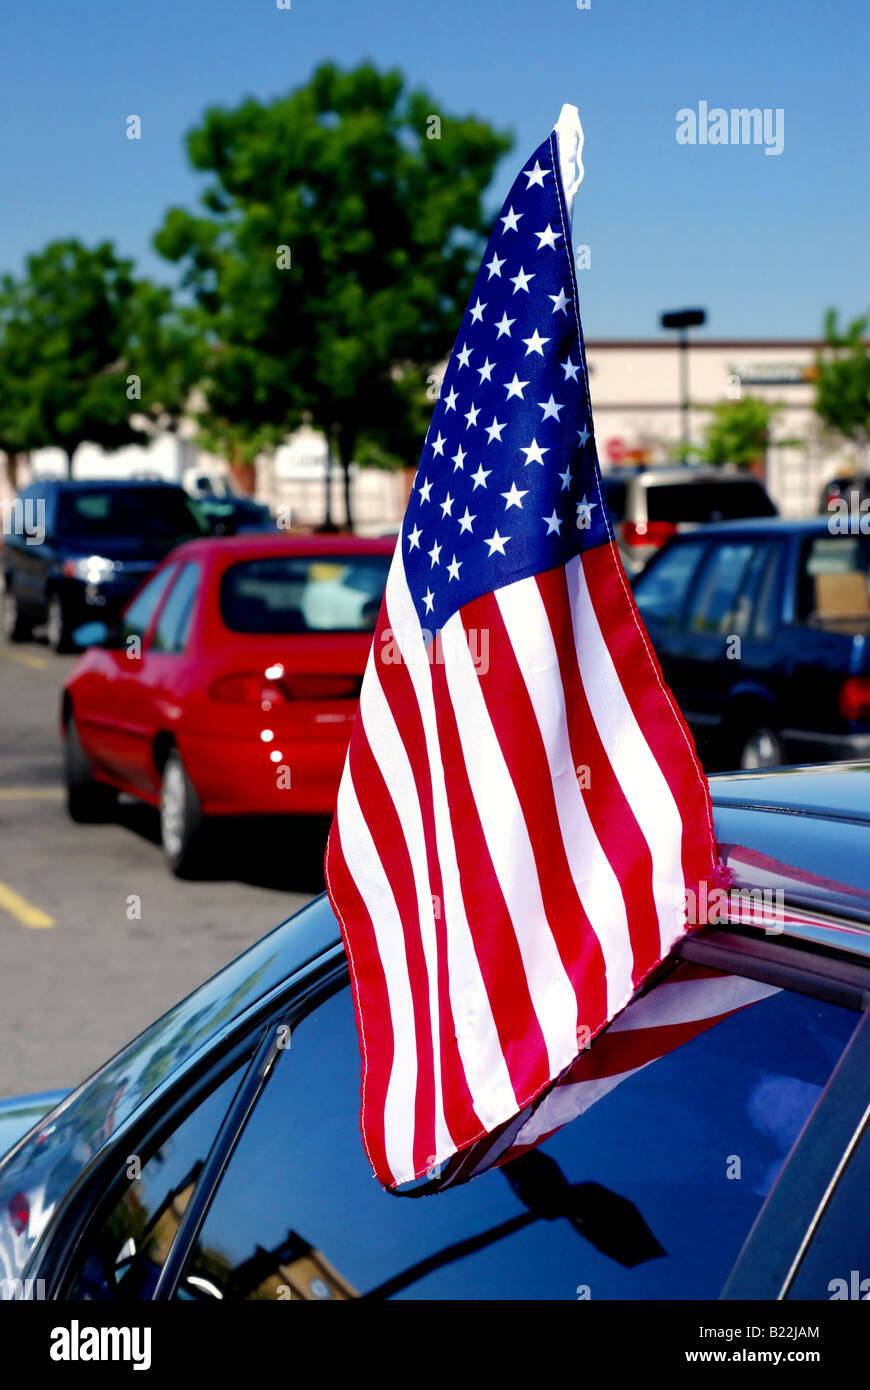 Eine amerikanische Flagge, die in einem Autofenster eingefügt  Stockfotografie - Alamy